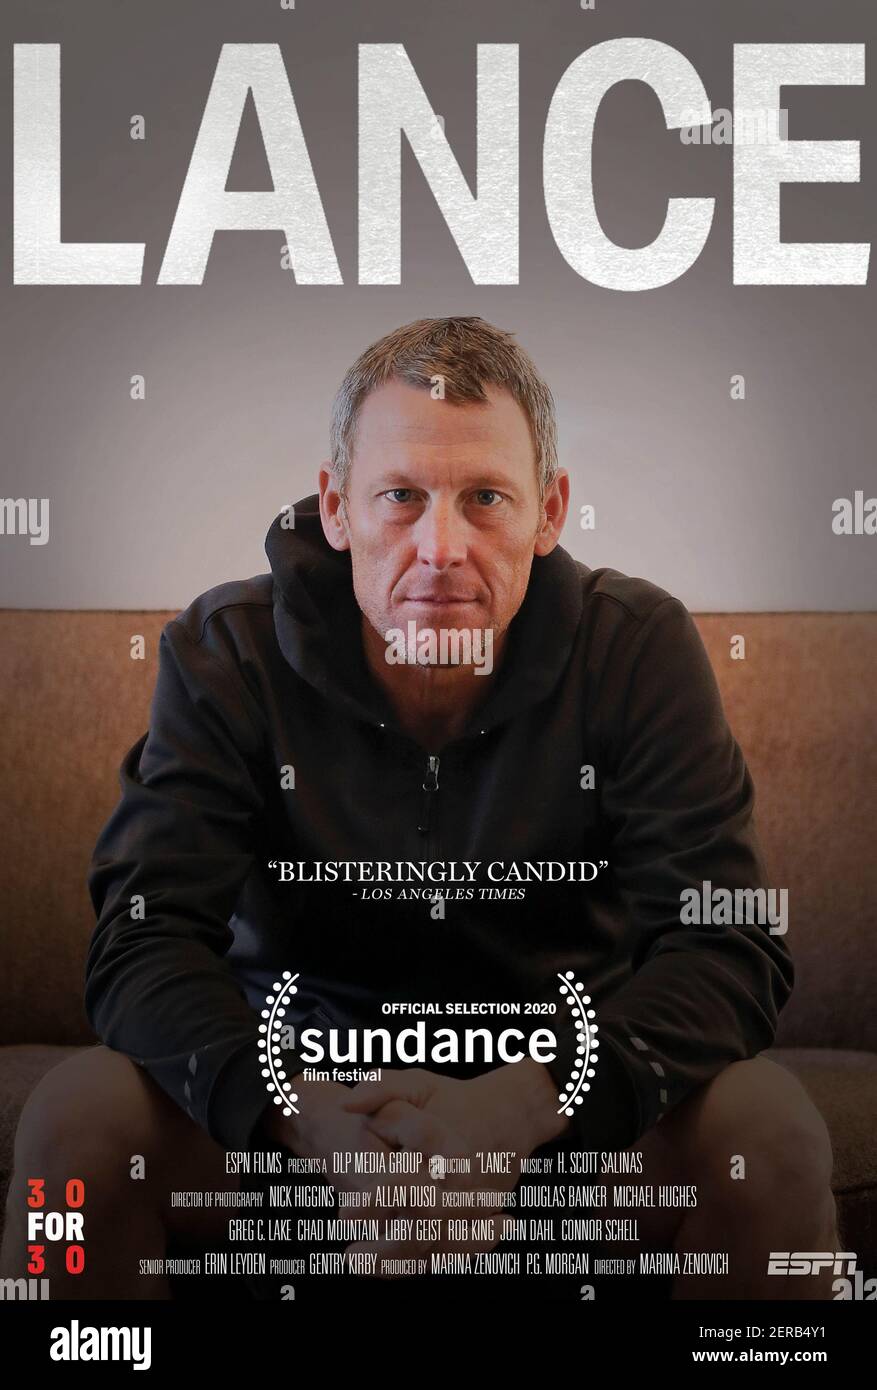 Lance (2020) unter der Regie von Marina Zenovich mit Lance Armstrong, Tyler Hamilton und George Hincapie. Eine persönliche Untersuchung des Aufstiegs und Niedergangs von Lance Armstrong. Stockfoto